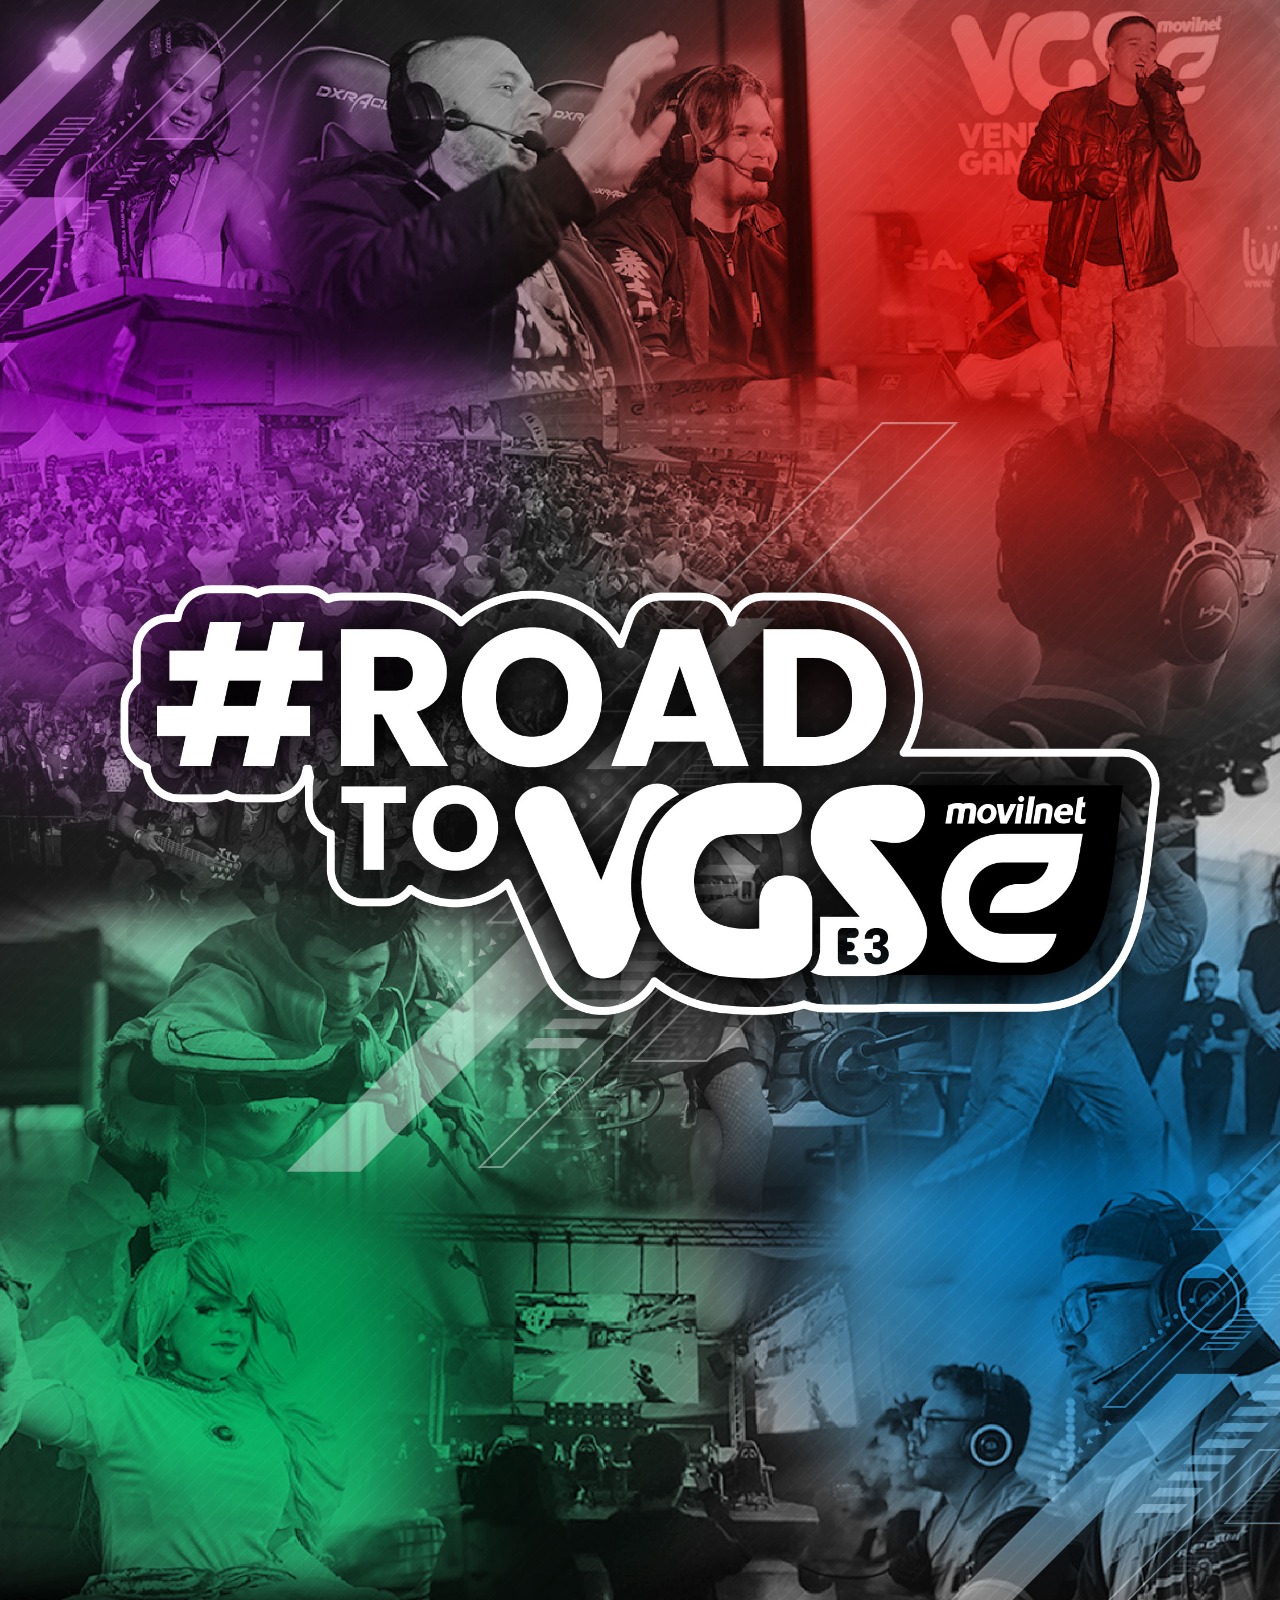 Venezuela Game Show anuncia el #ROADTOVGS, la ruta gamer hacia la tercera edición del evento